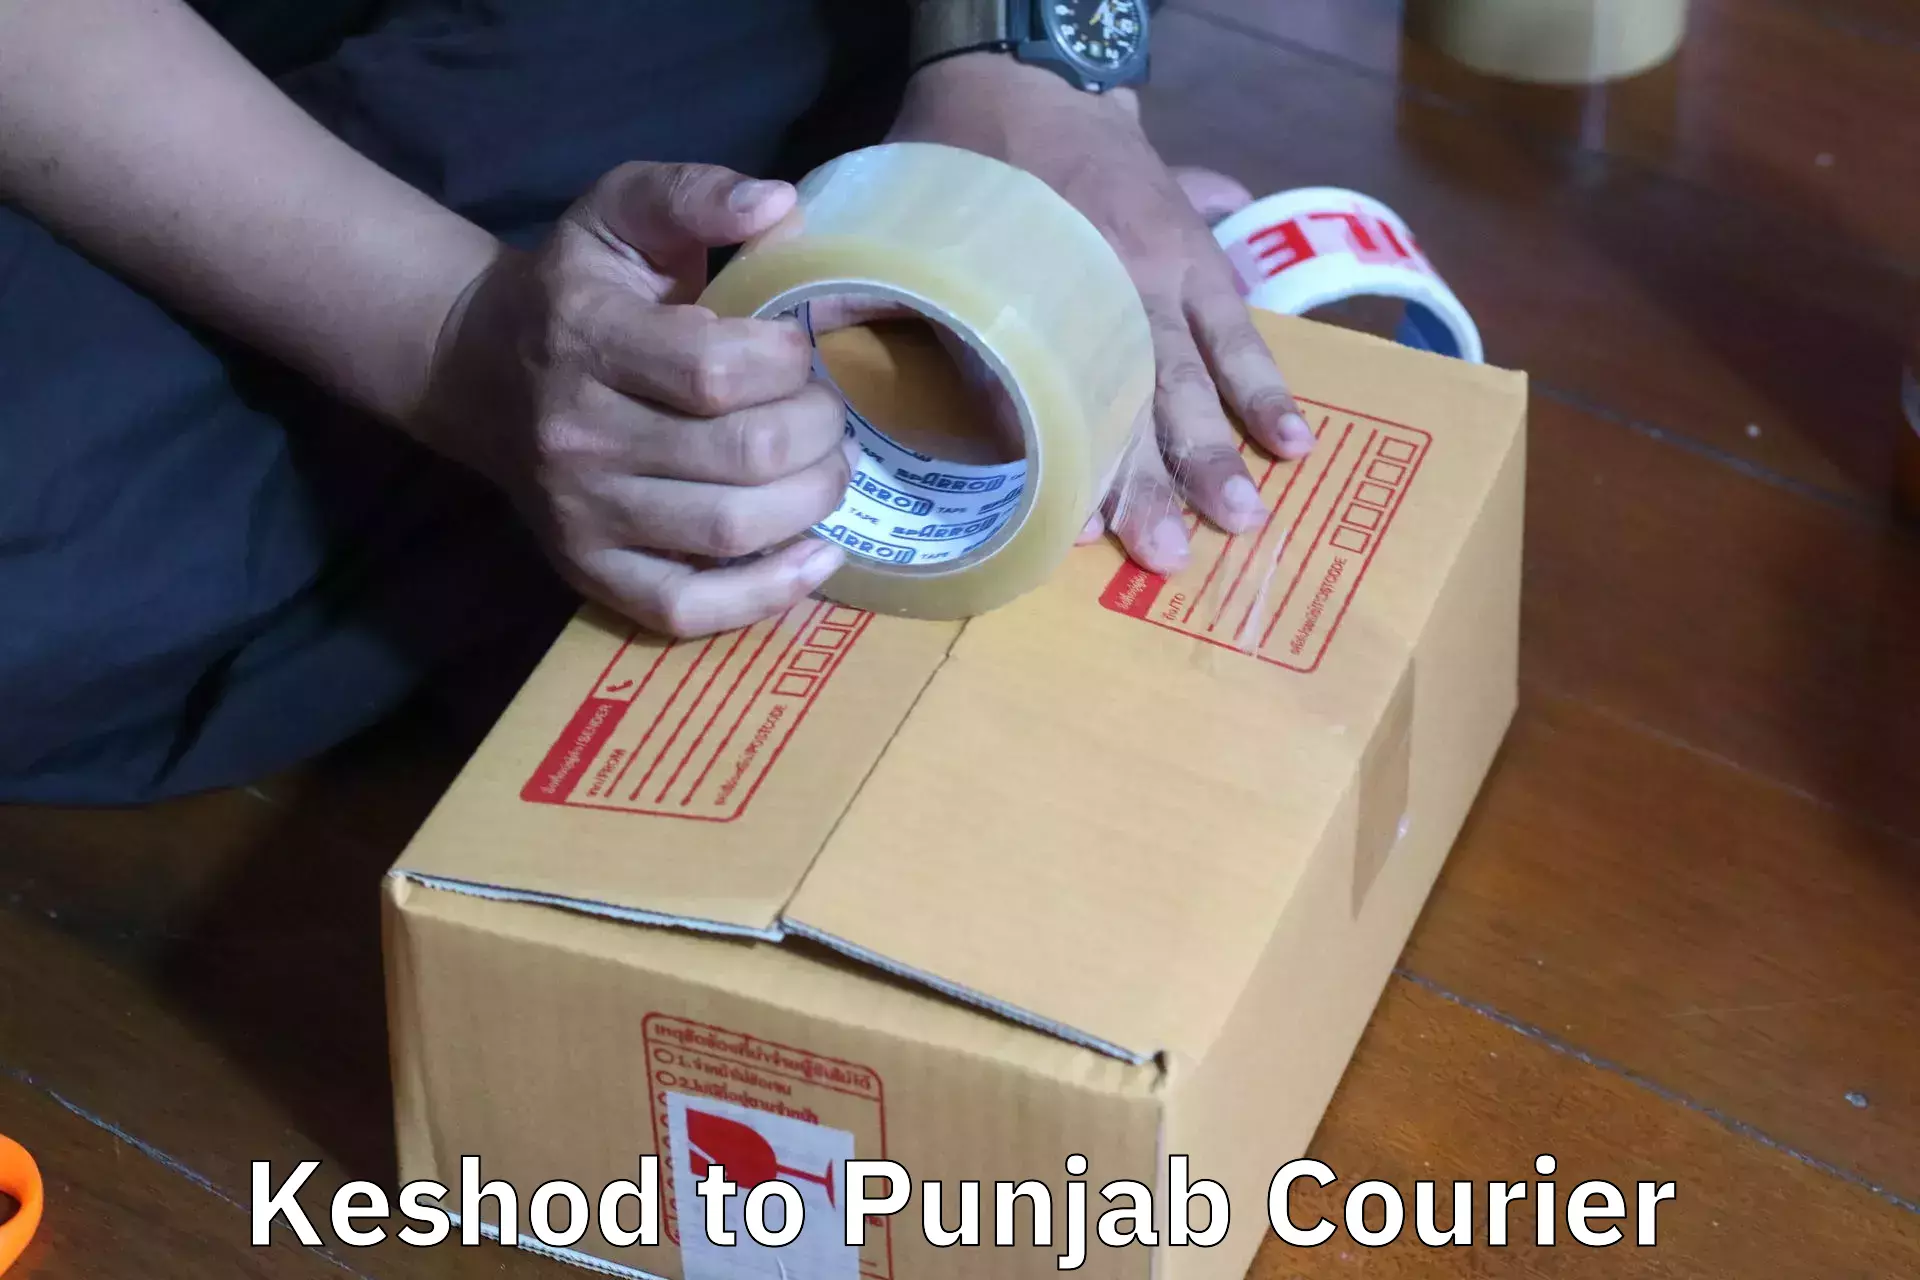 Furniture transport experts Keshod to Punjab